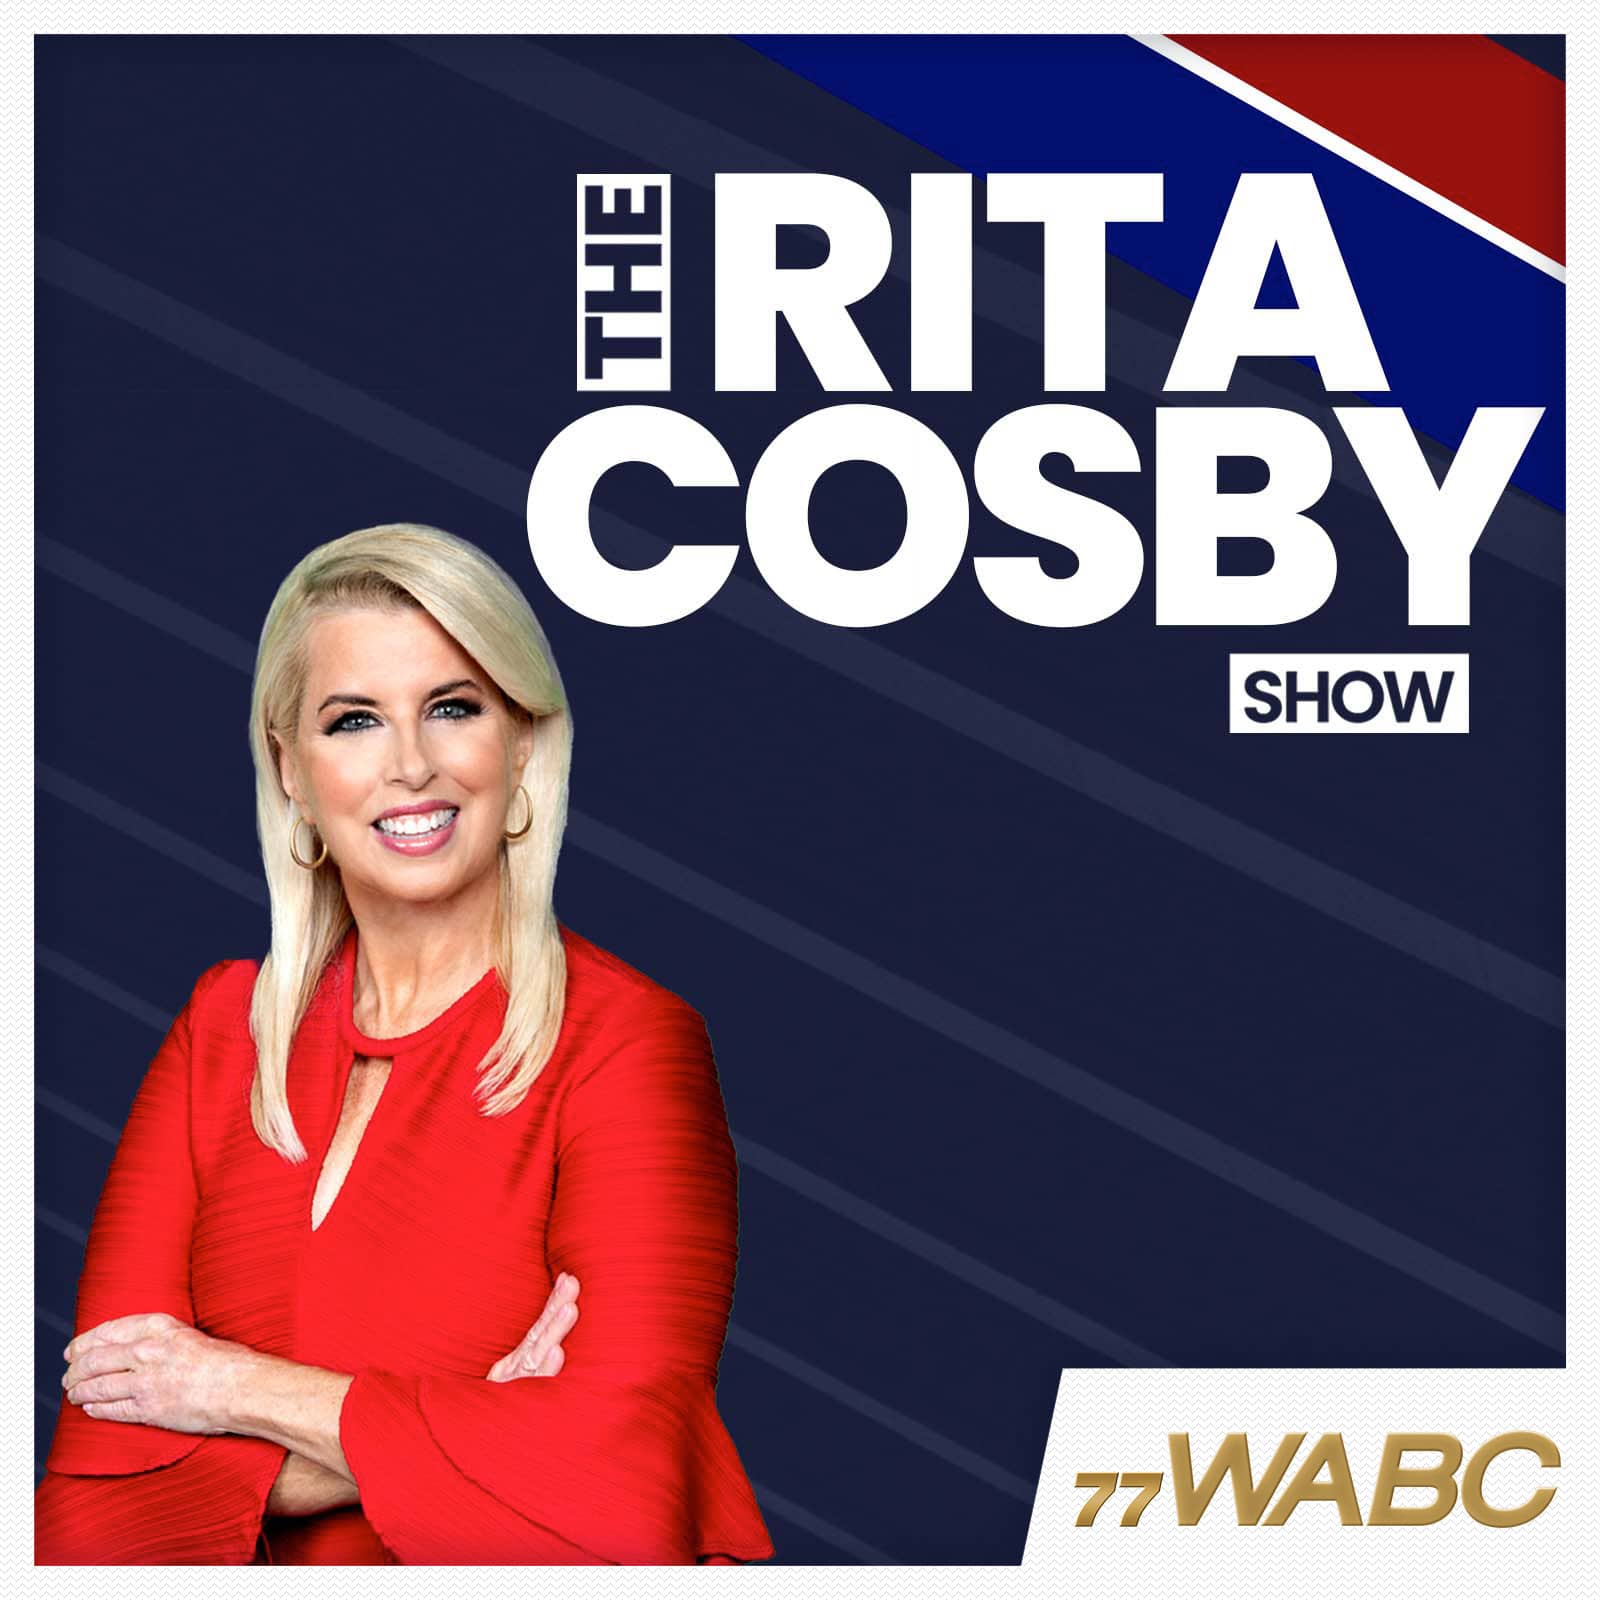 rita-cosby-podcast-new-logo863658